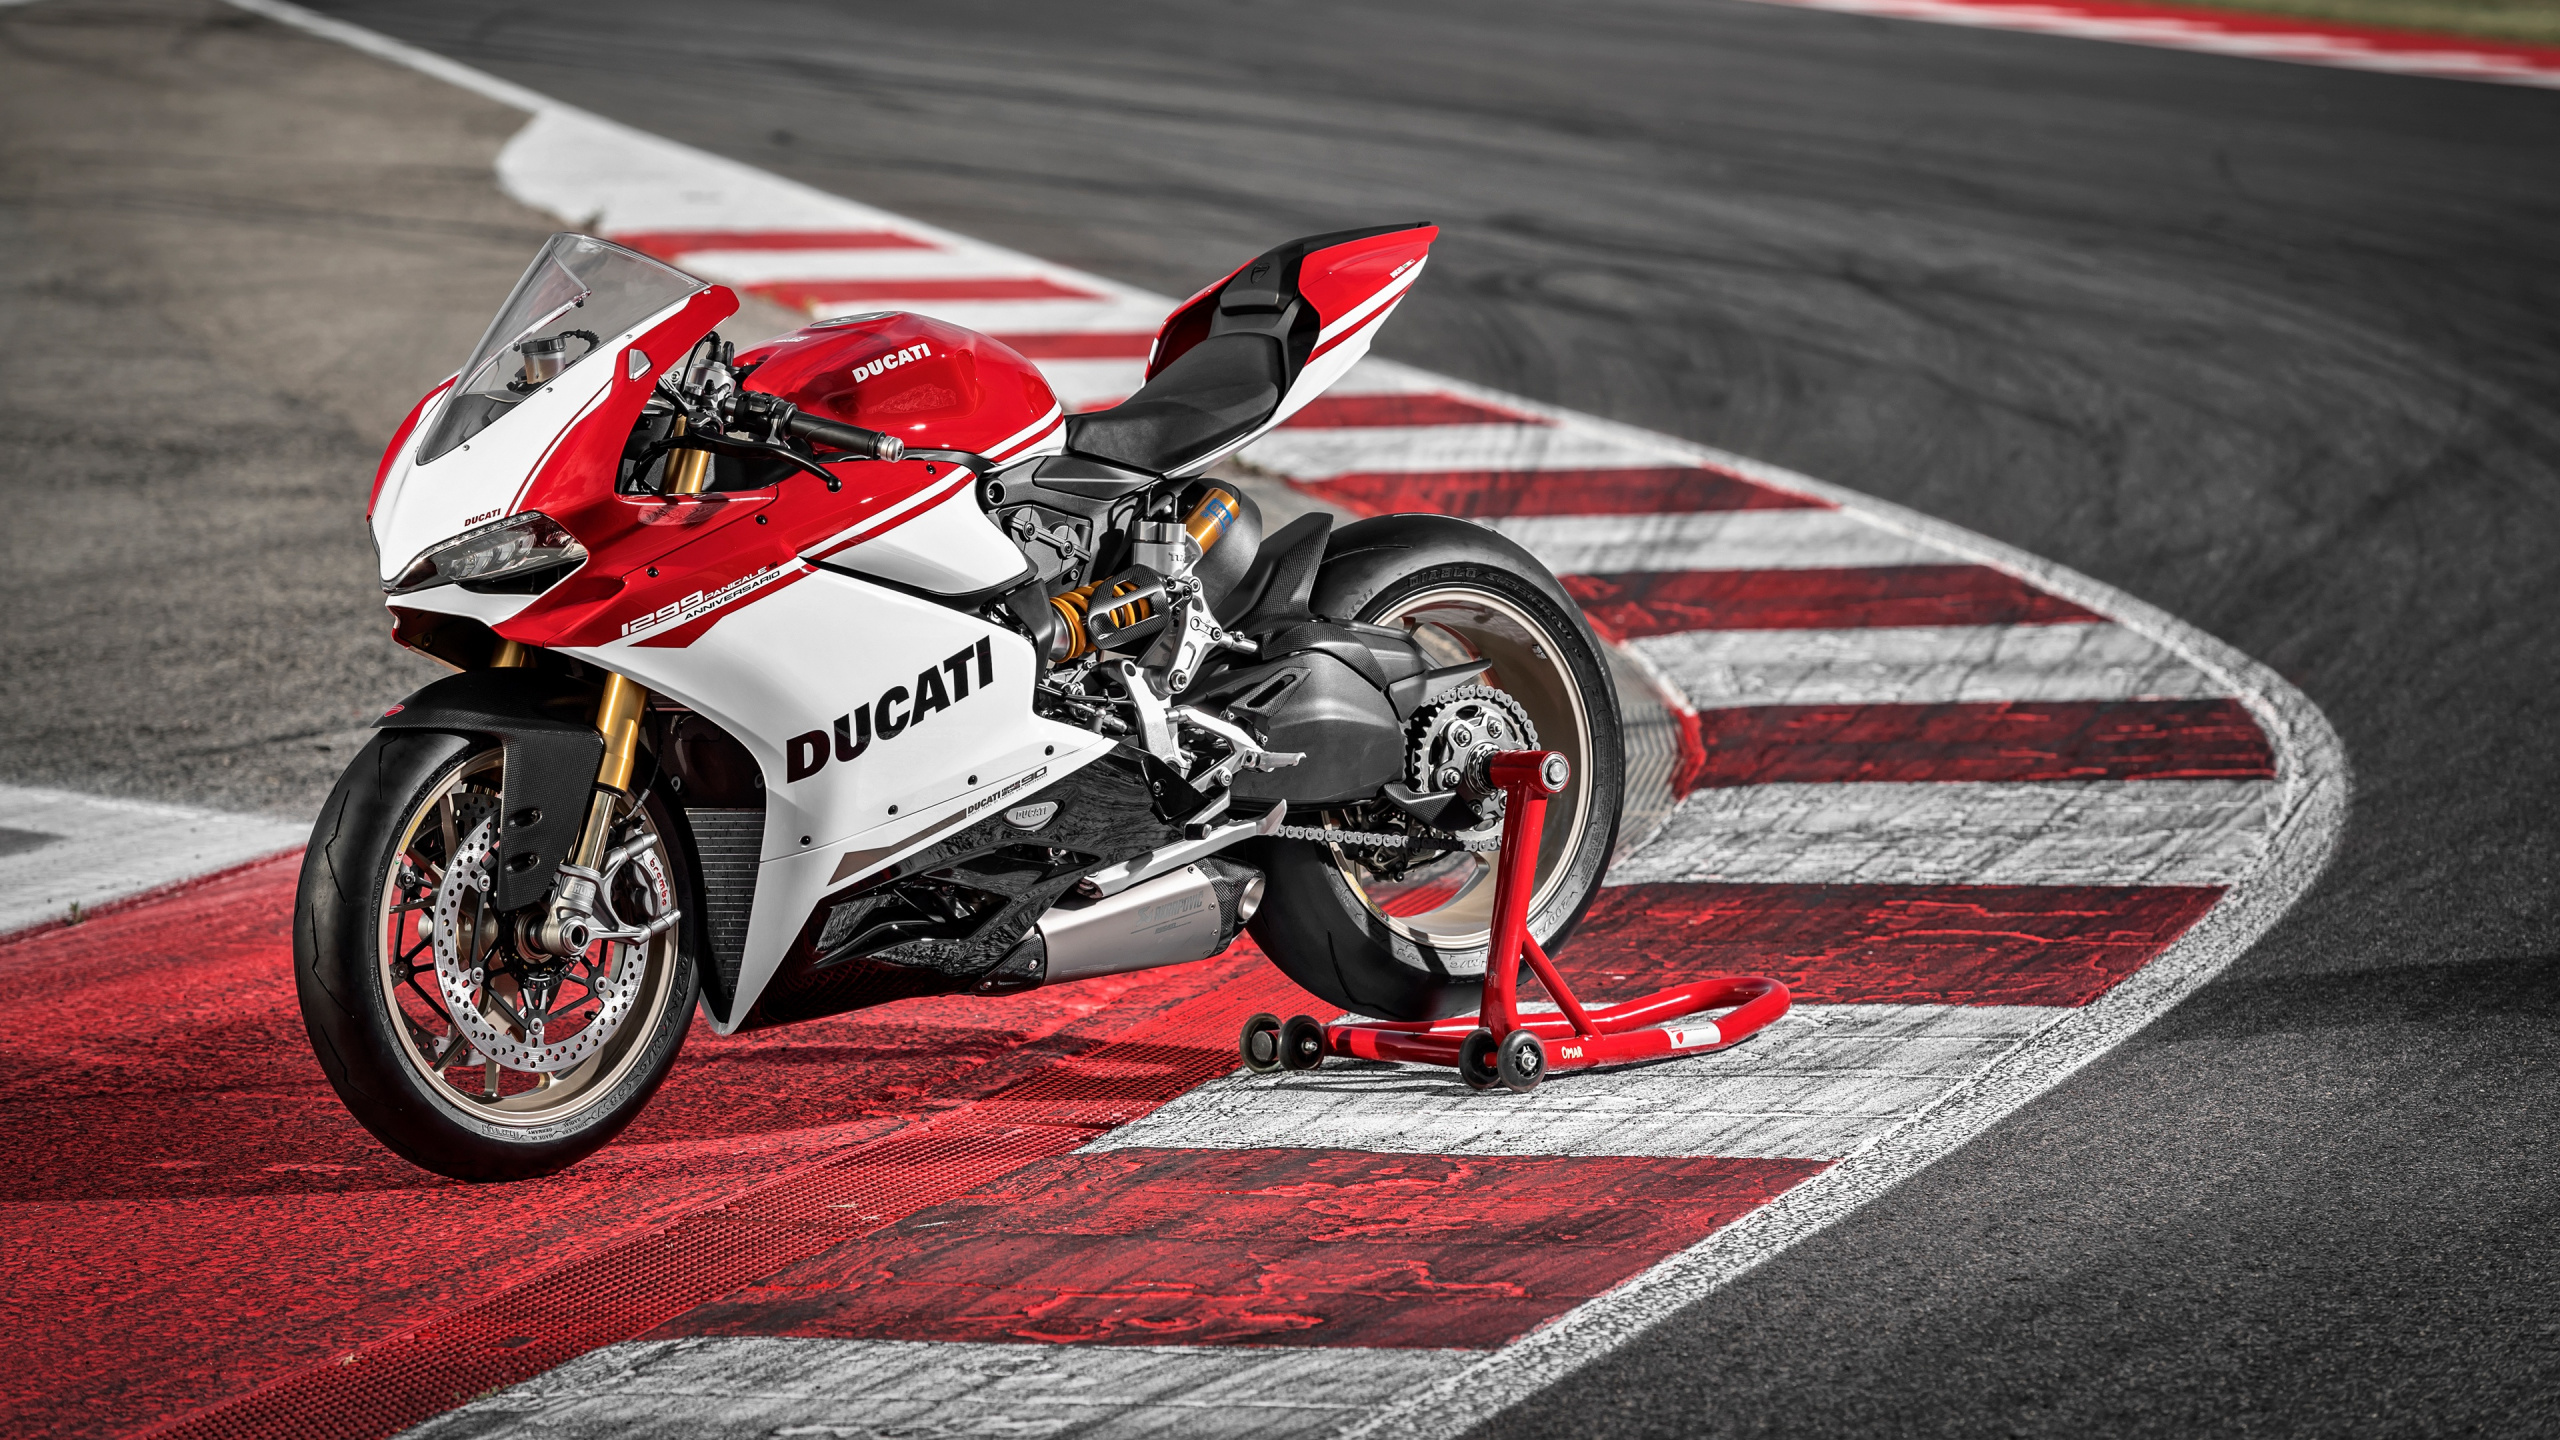 杜卡迪1299, Fim超级摩托车世界锦标赛, 杜卡迪, 超级赛车, 赛道 壁纸 2560x1440 允许